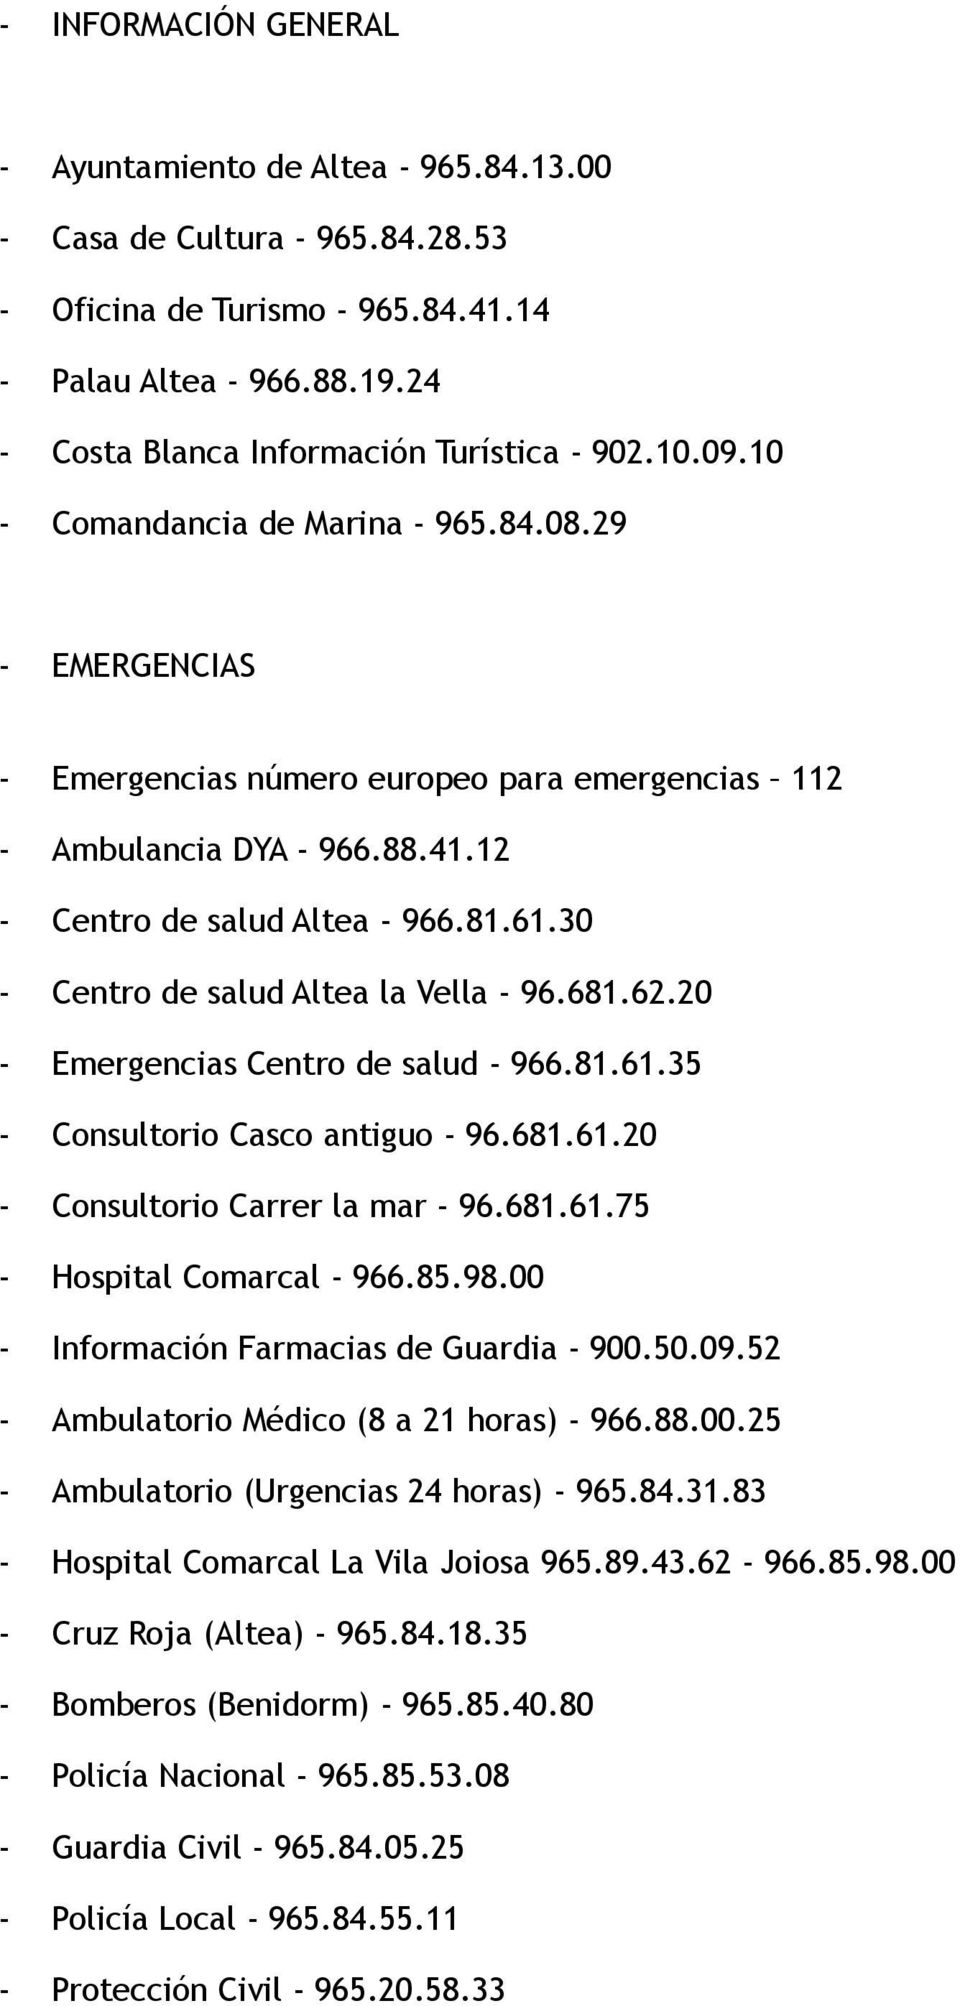 12 - Centro de salud Altea - 966.81.61.30 - Centro de salud Altea la Vella - 96.681.62.20 - Emergencias Centro de salud - 966.81.61.35 - Consultorio Casco antiguo - 96.681.61.20 - Consultorio Carrer la mar - 96.